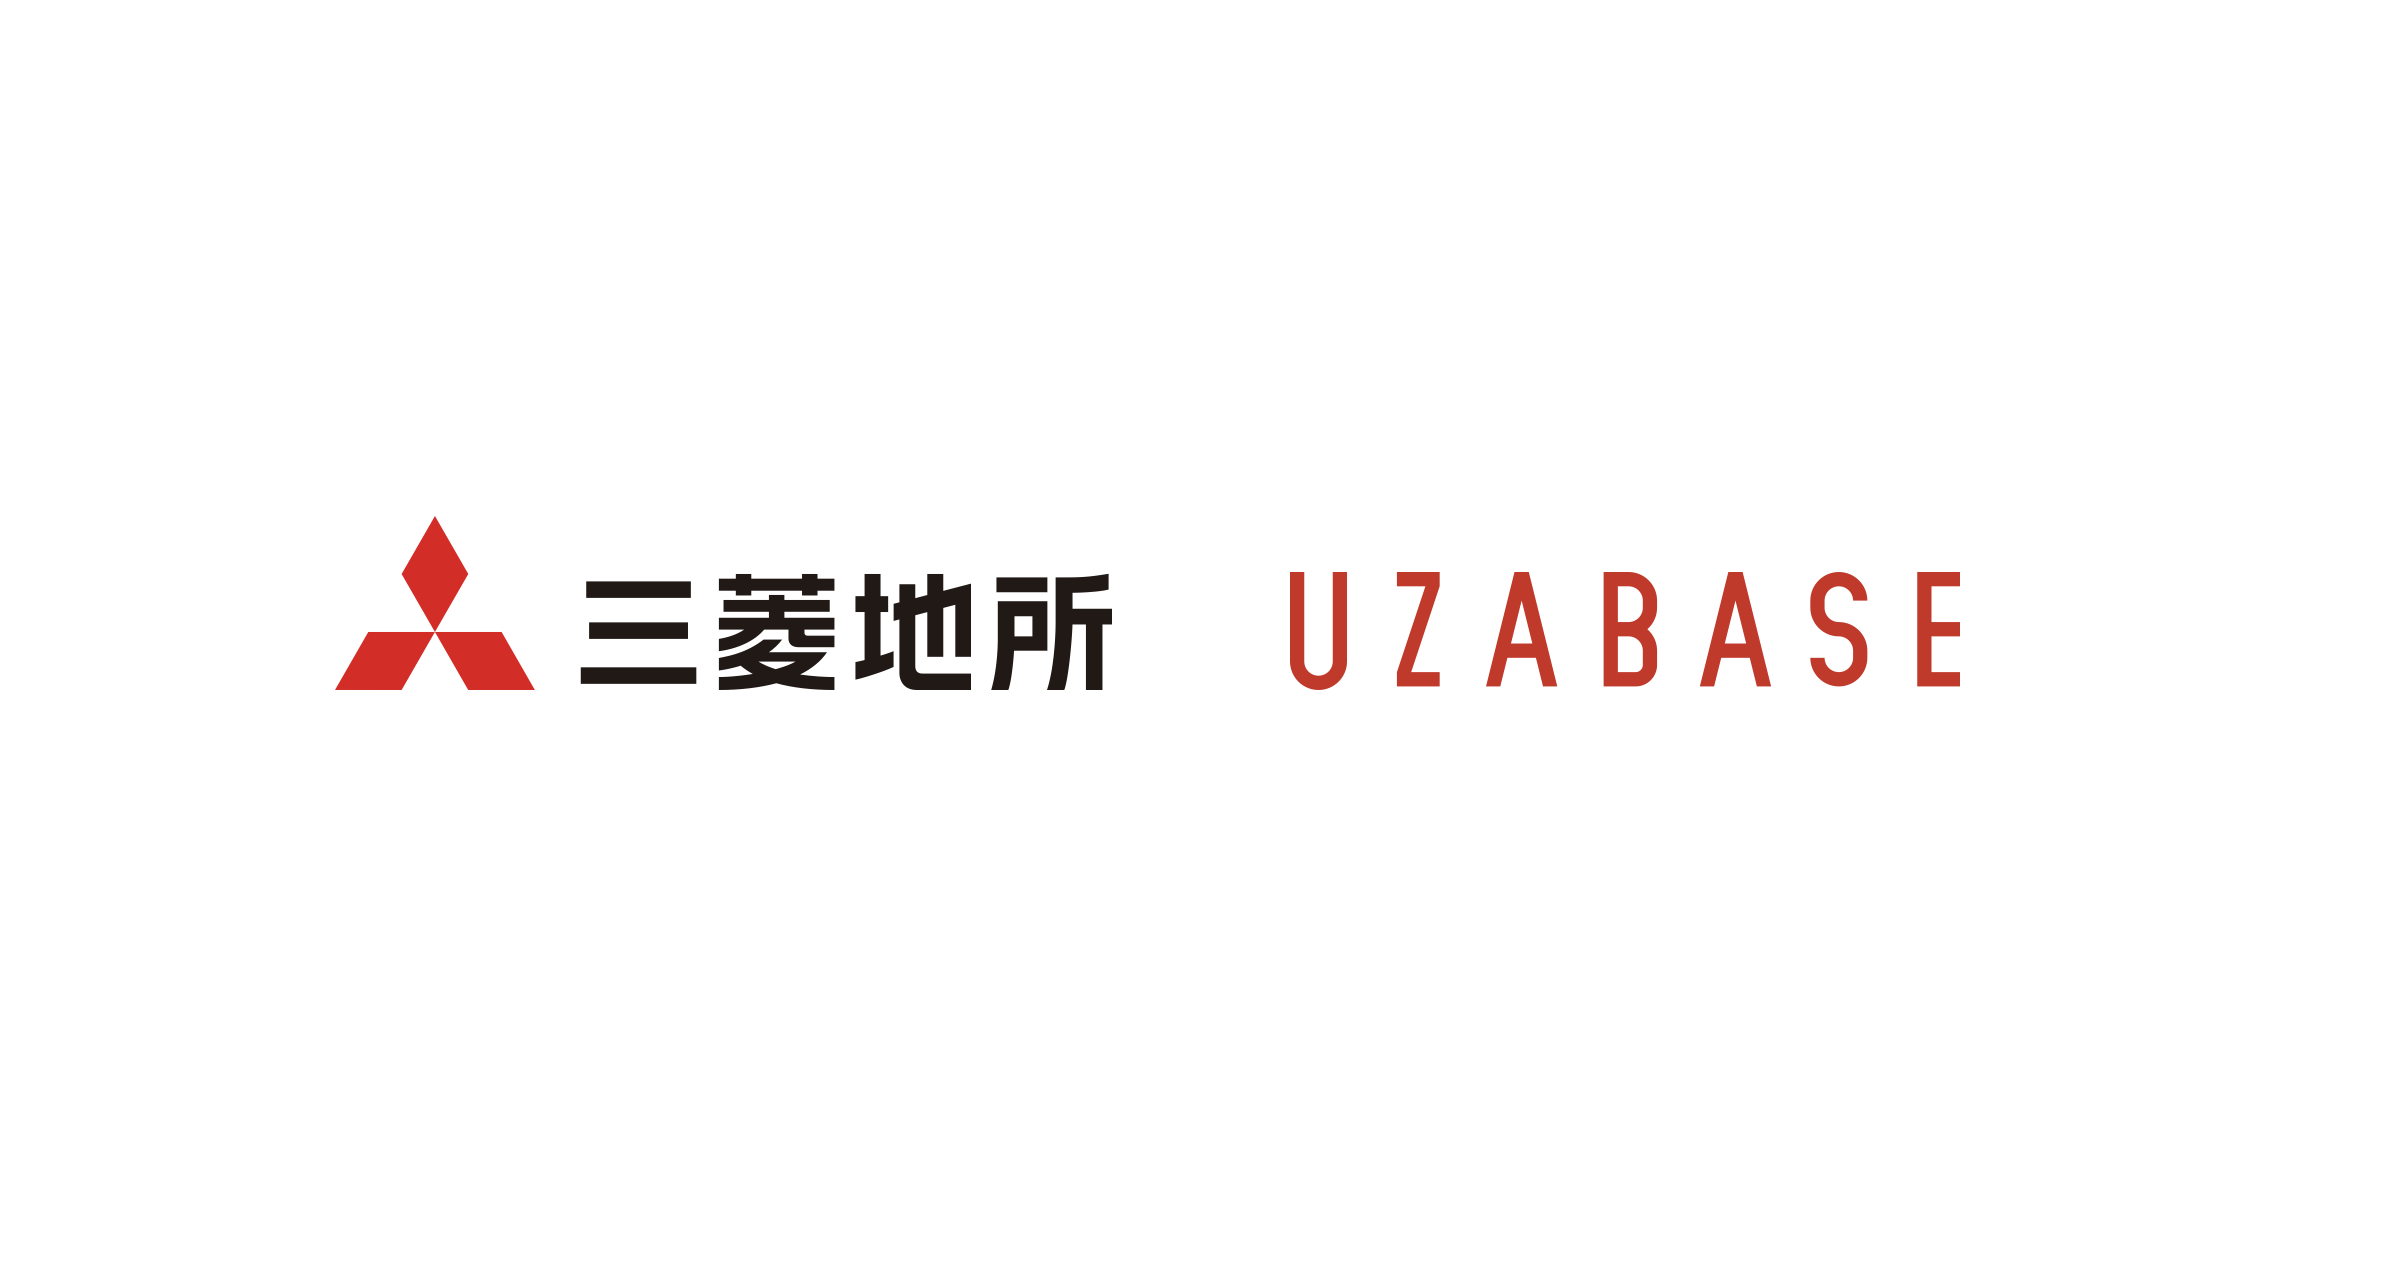 ユーザベース、三菱地所株式会社と資本業務提携 | お知らせ | 株式会社ユーザベース コーポレートサイト - Uzabase